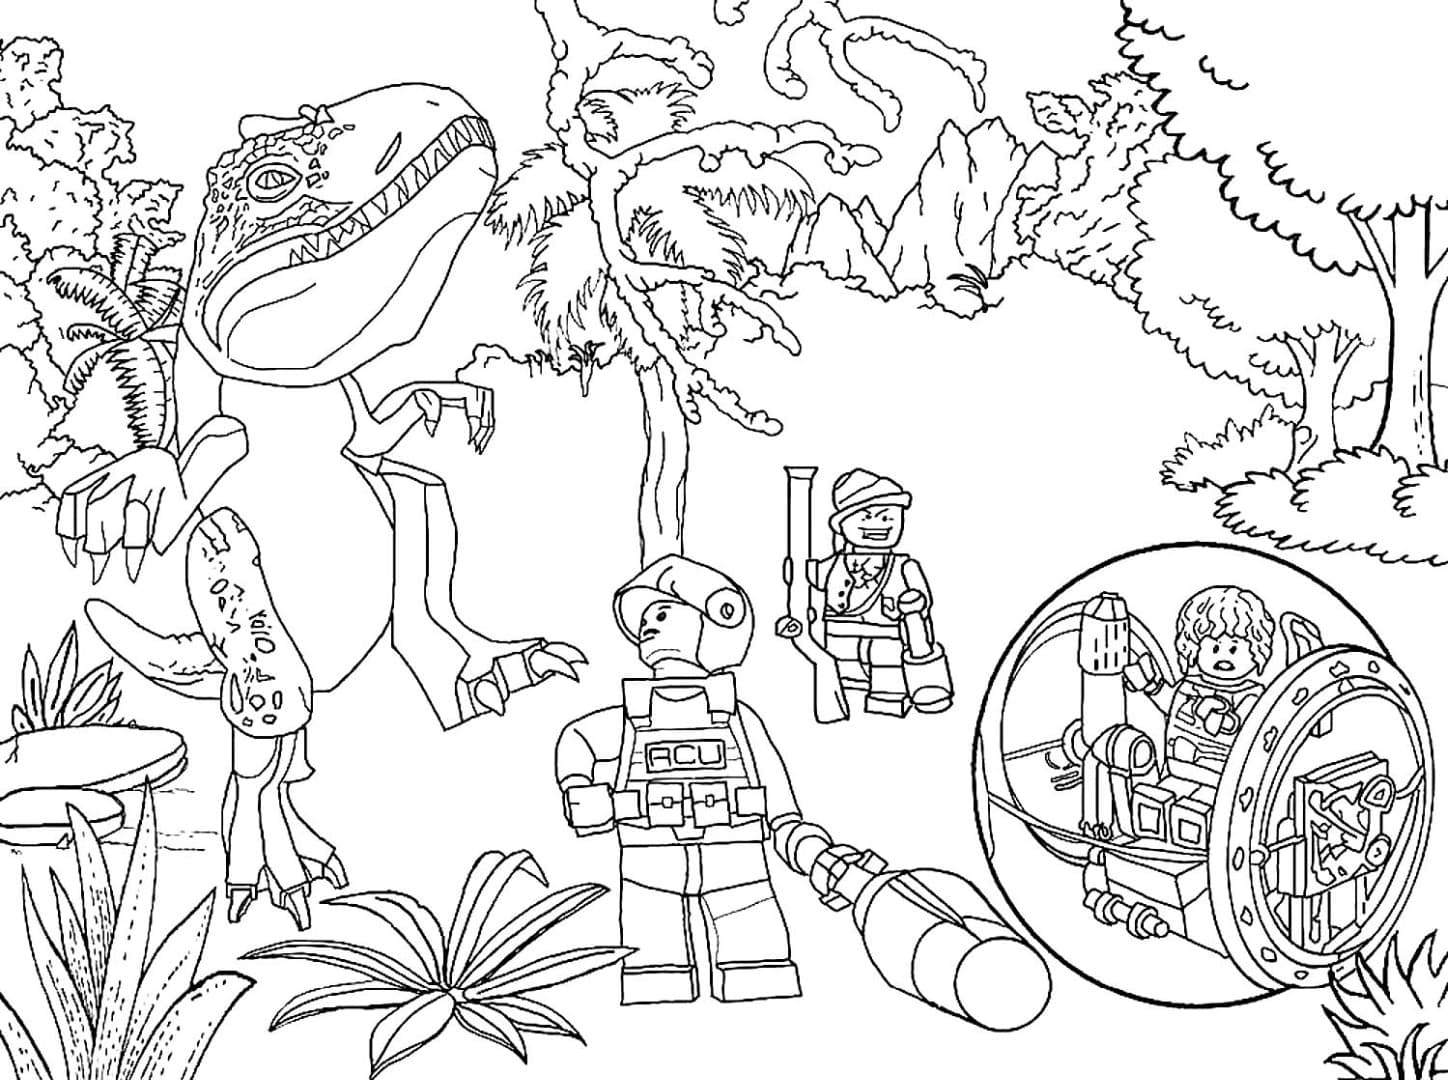 Динозавры Лего возле дерева